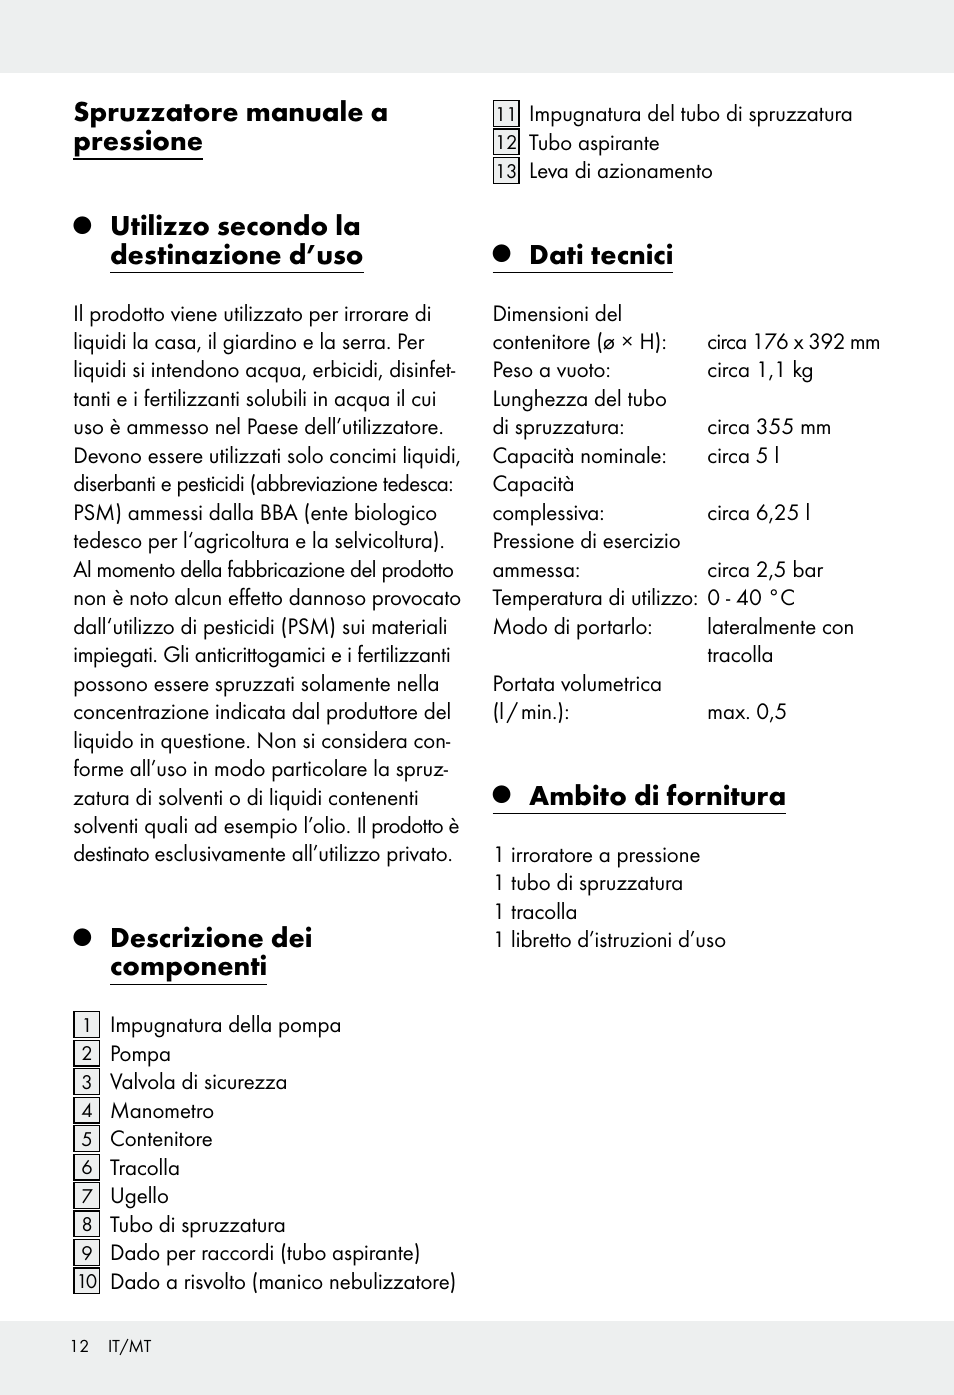 Spruzzatore manuale a pressione, Utilizzo secondo la destinazione d'uso,  Descrizione dei componenti | Florabest Z31339 User Manual | Page 12 / 35